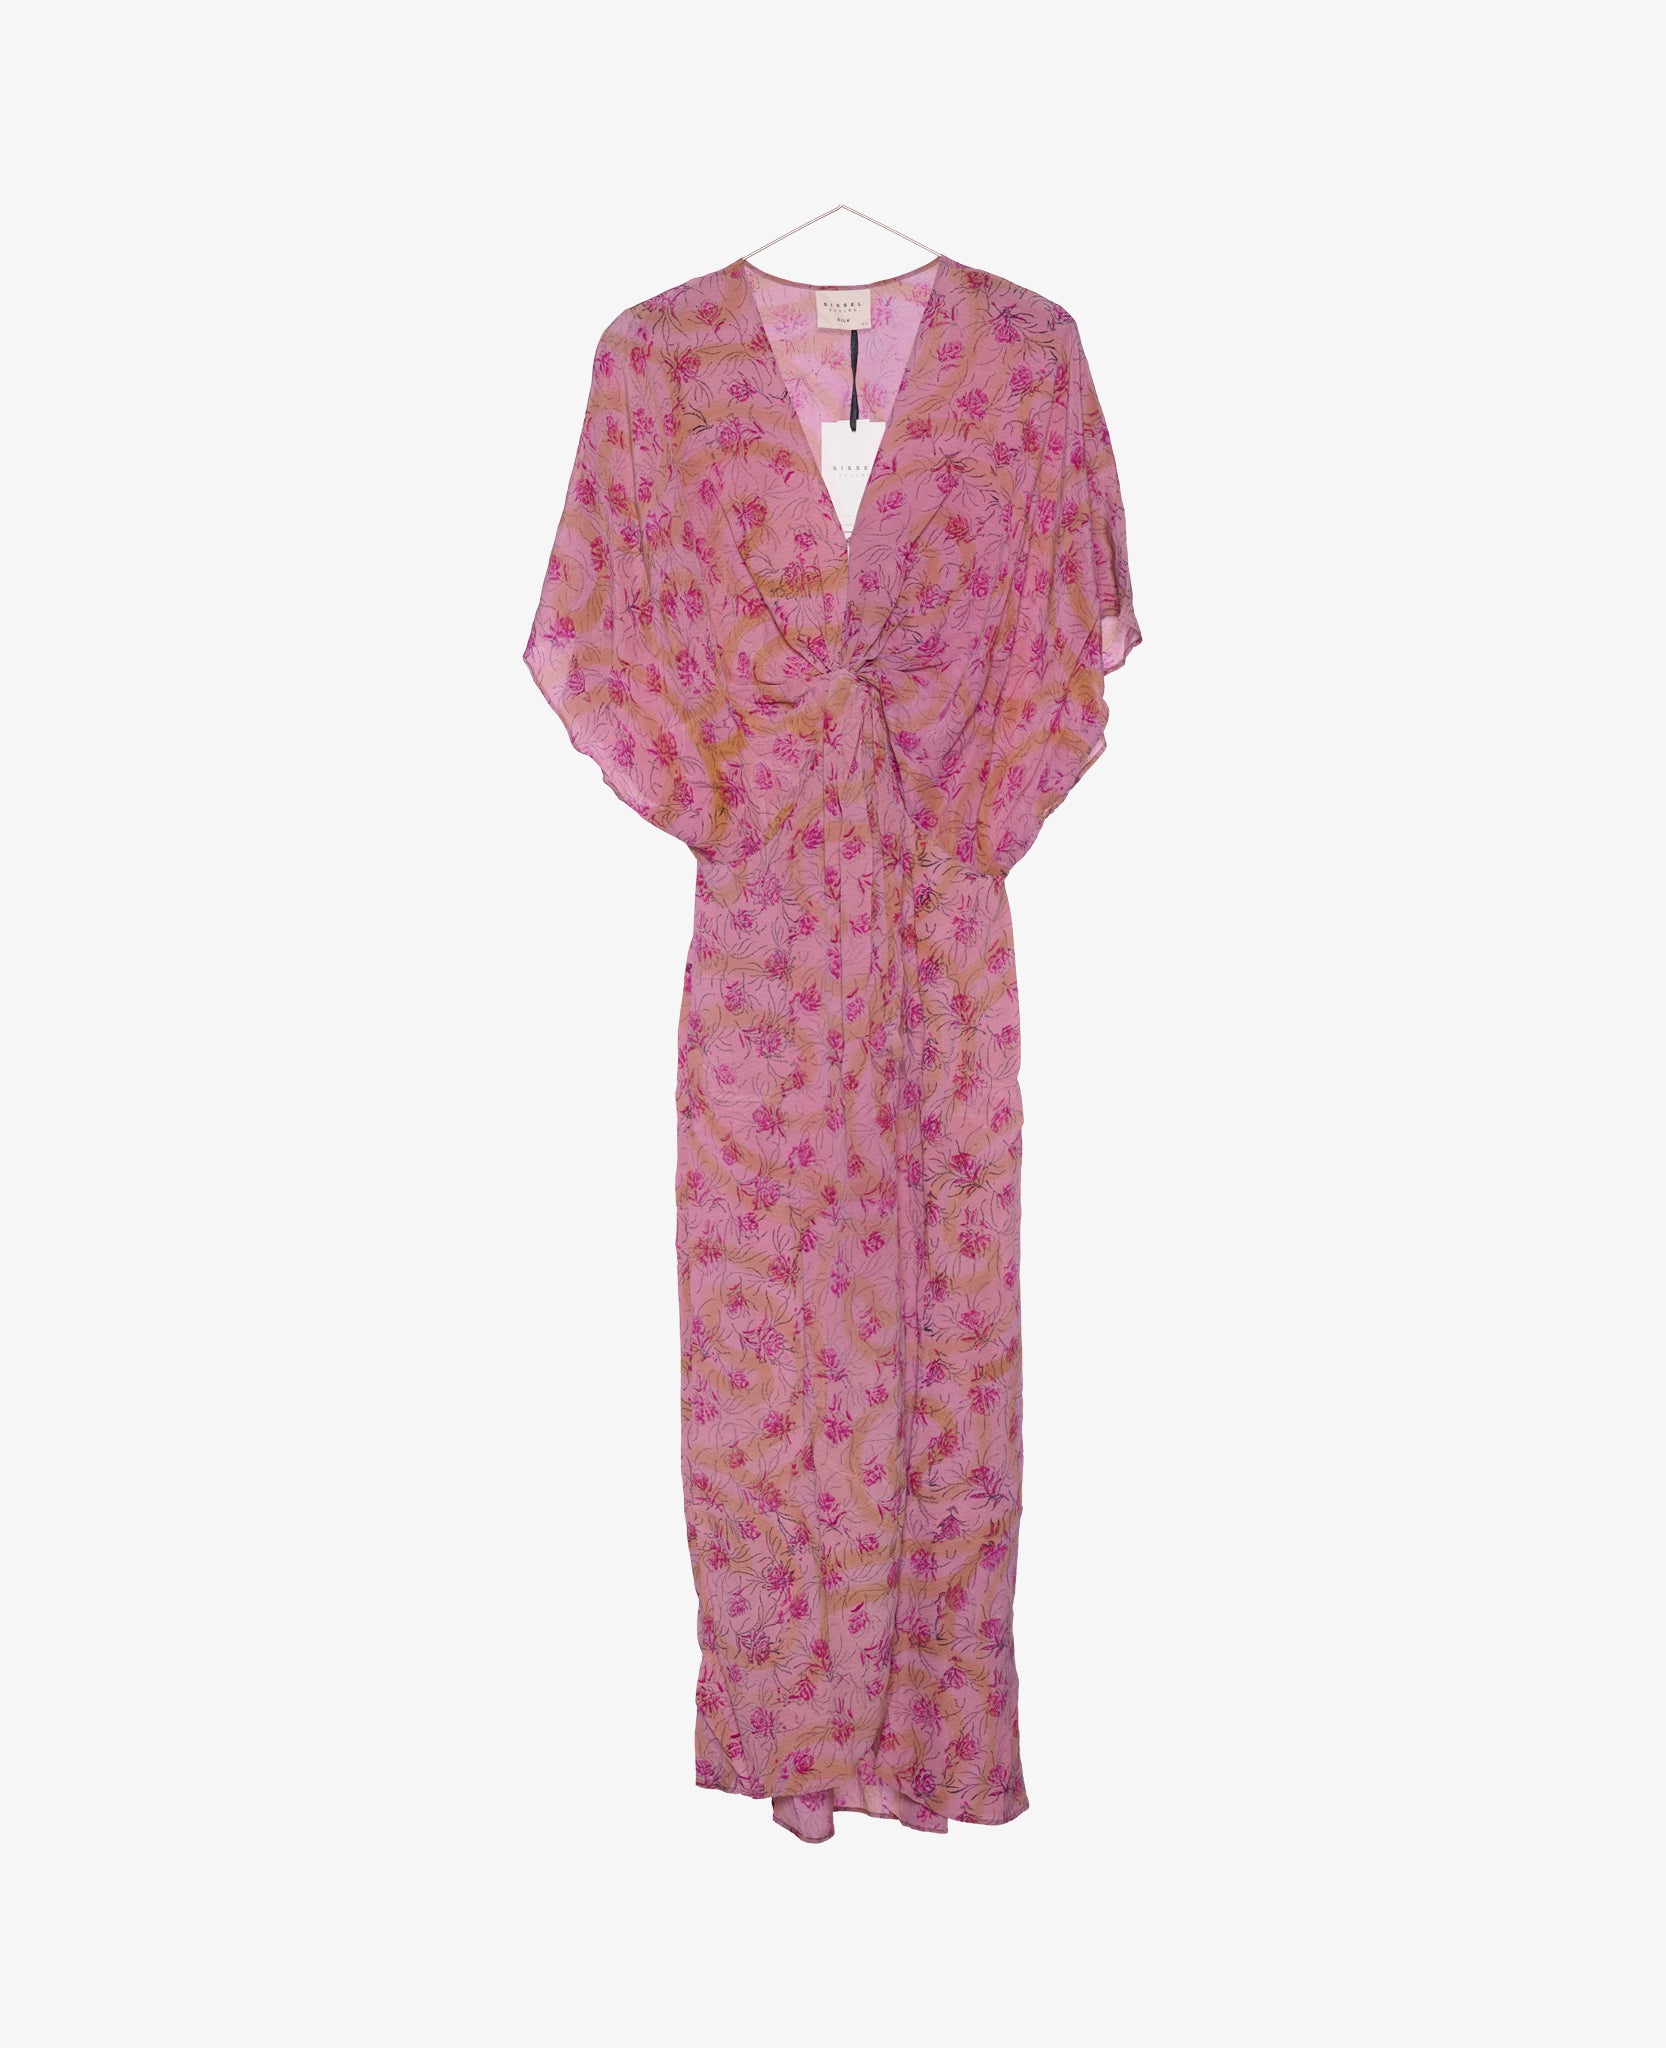 Monaco Silk Dress - No. 281 One-Size